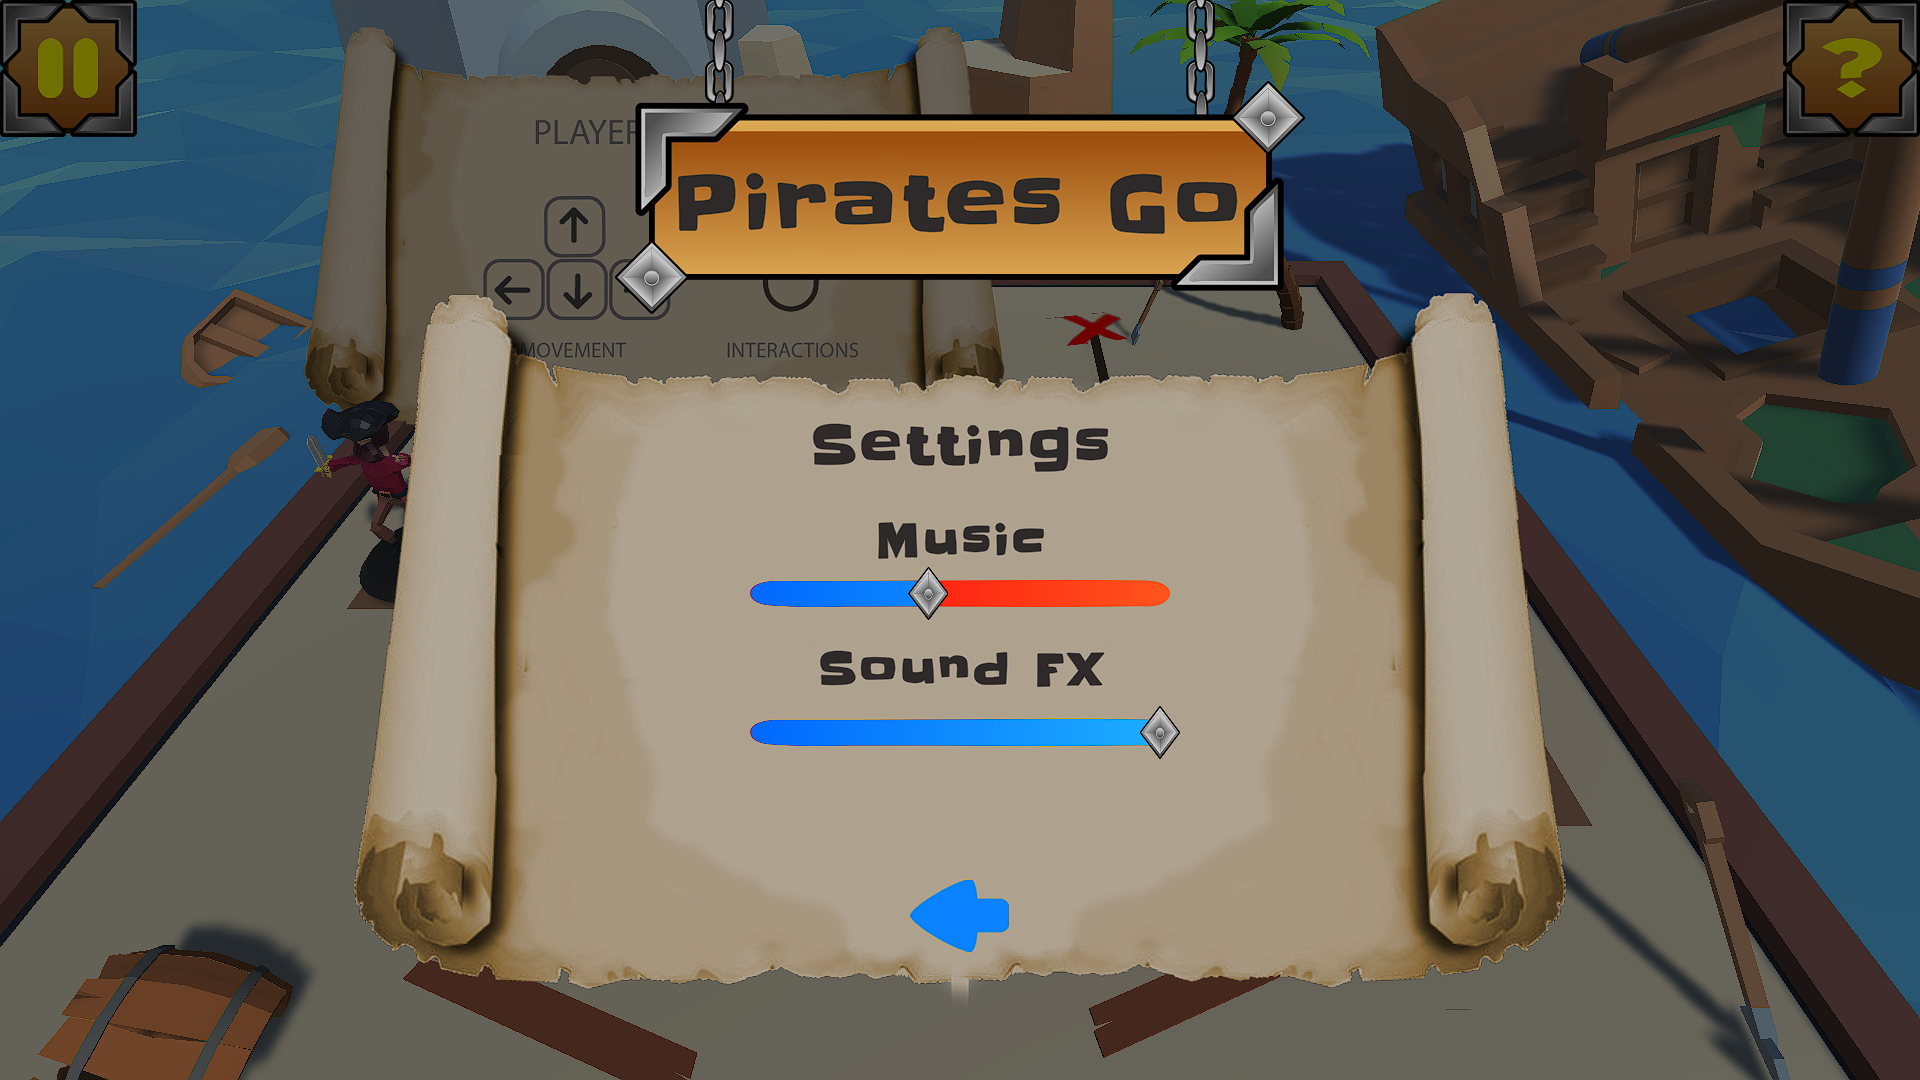 Menu de ajustes de Pirates Go